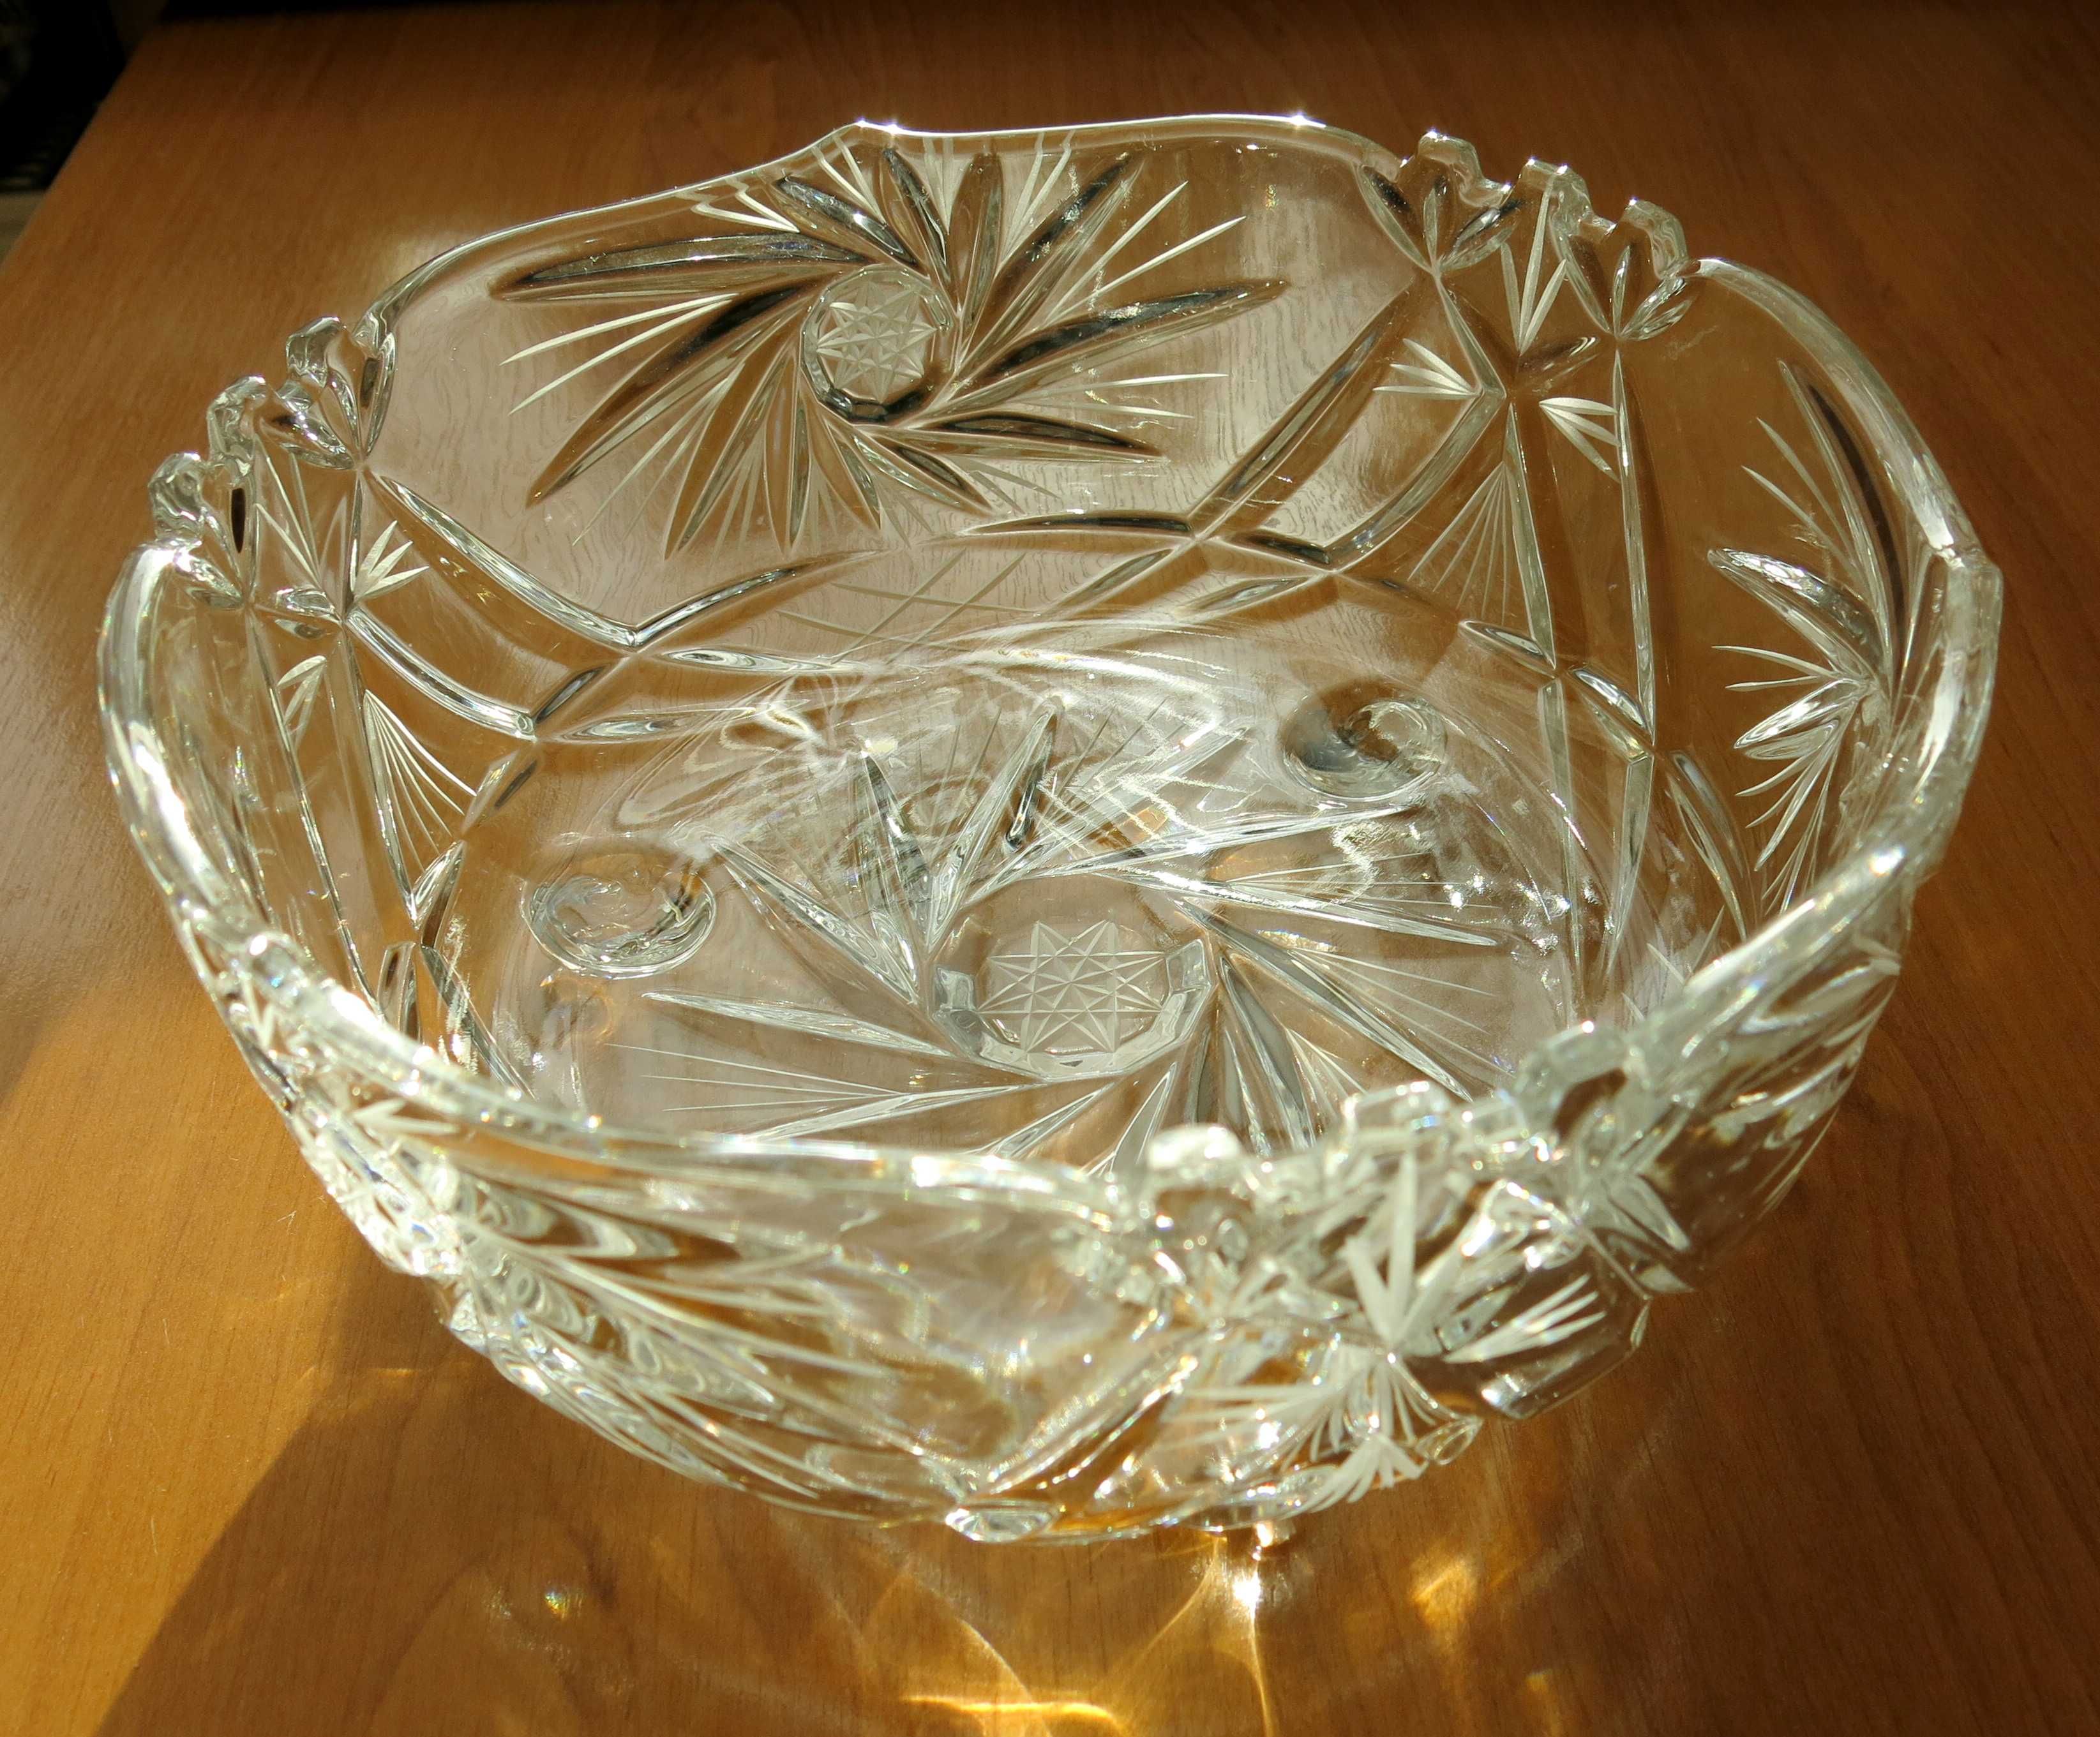 Kryształ, owocarka, duża misa kryształowa na nóżkach - 22 cm